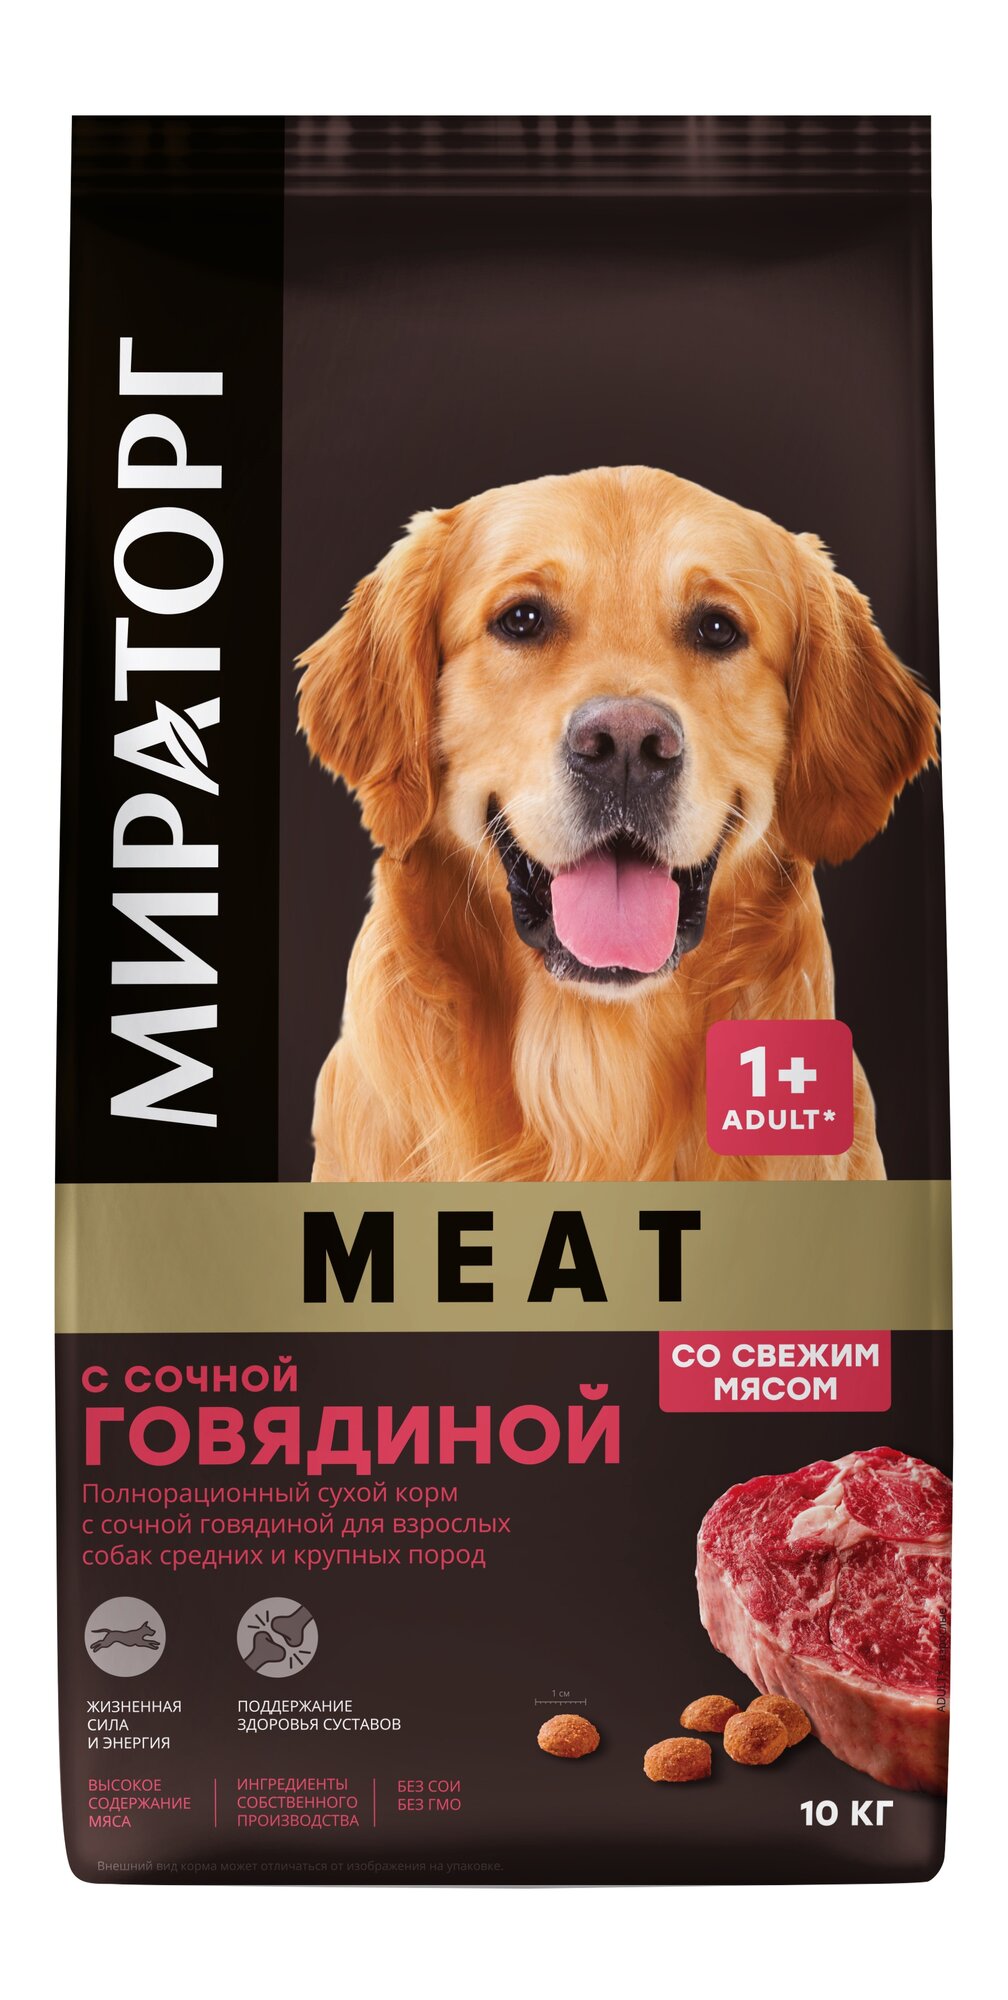 Сухой корм для собак Мираторг для здоровья костей и суставов, говядина 1 уп. х 1 шт. х 10 кг — купить в интернет-магазине по низкой цене на Яндекс Маркете